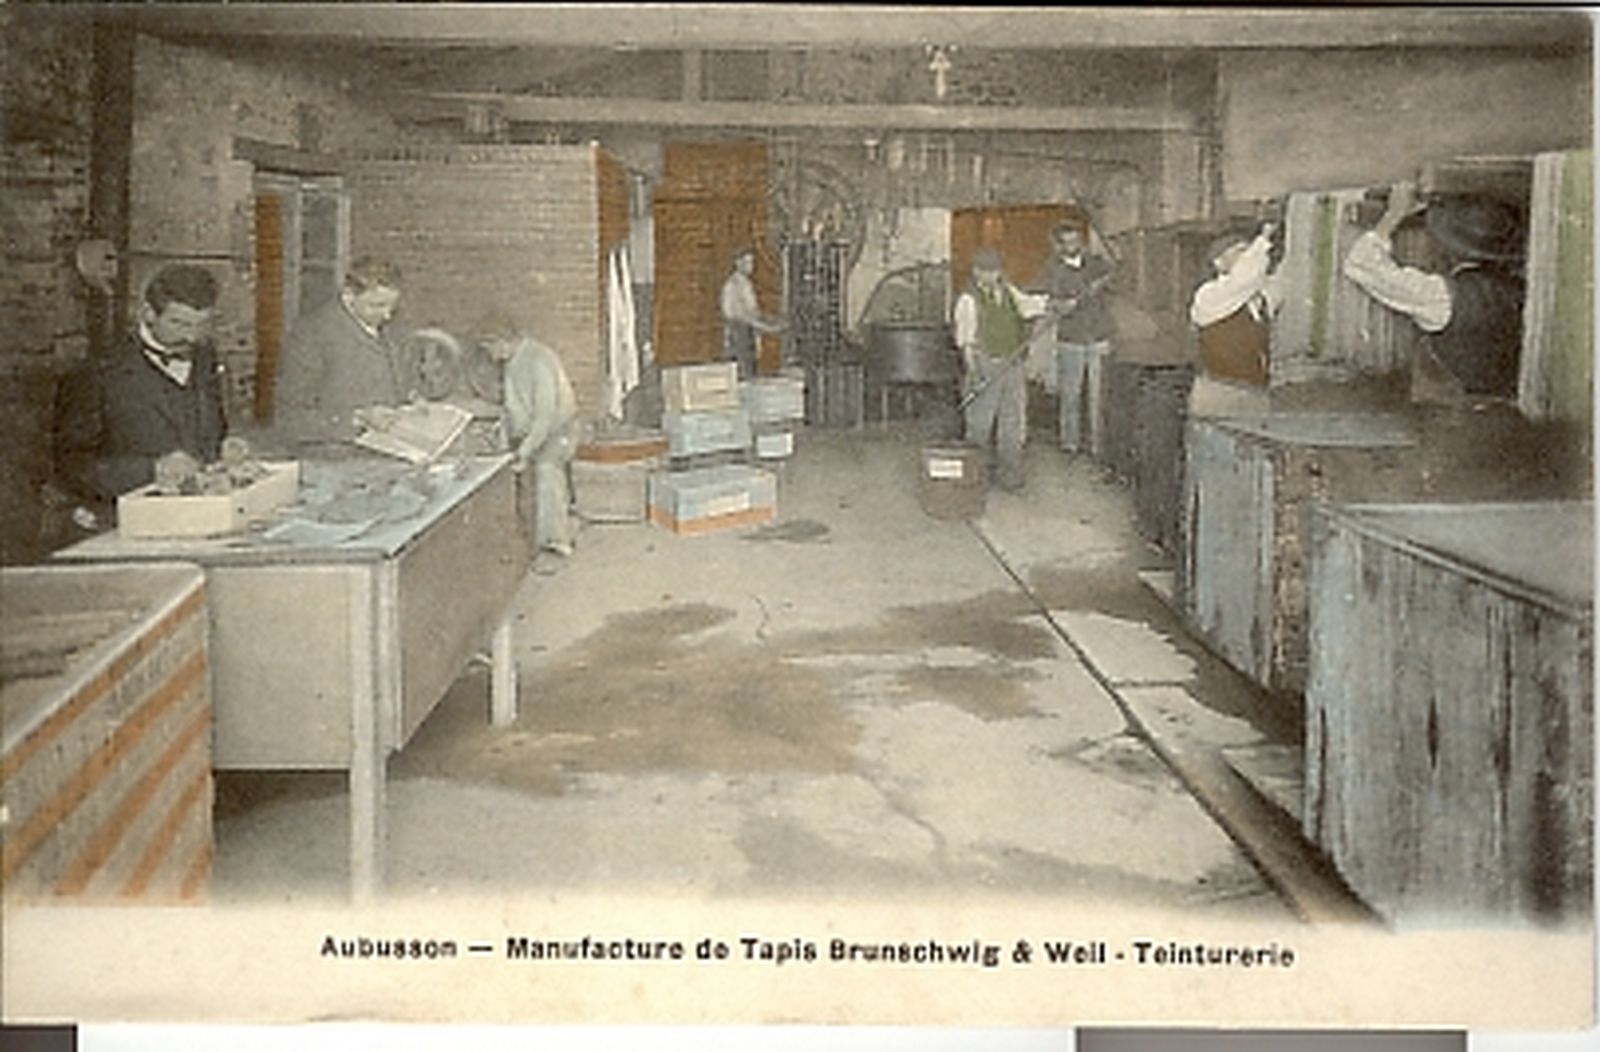 Carte postale (1er quart 20e siècle) de la manufacture Brunschwig et Weil : la teinturerie (collection particulière).